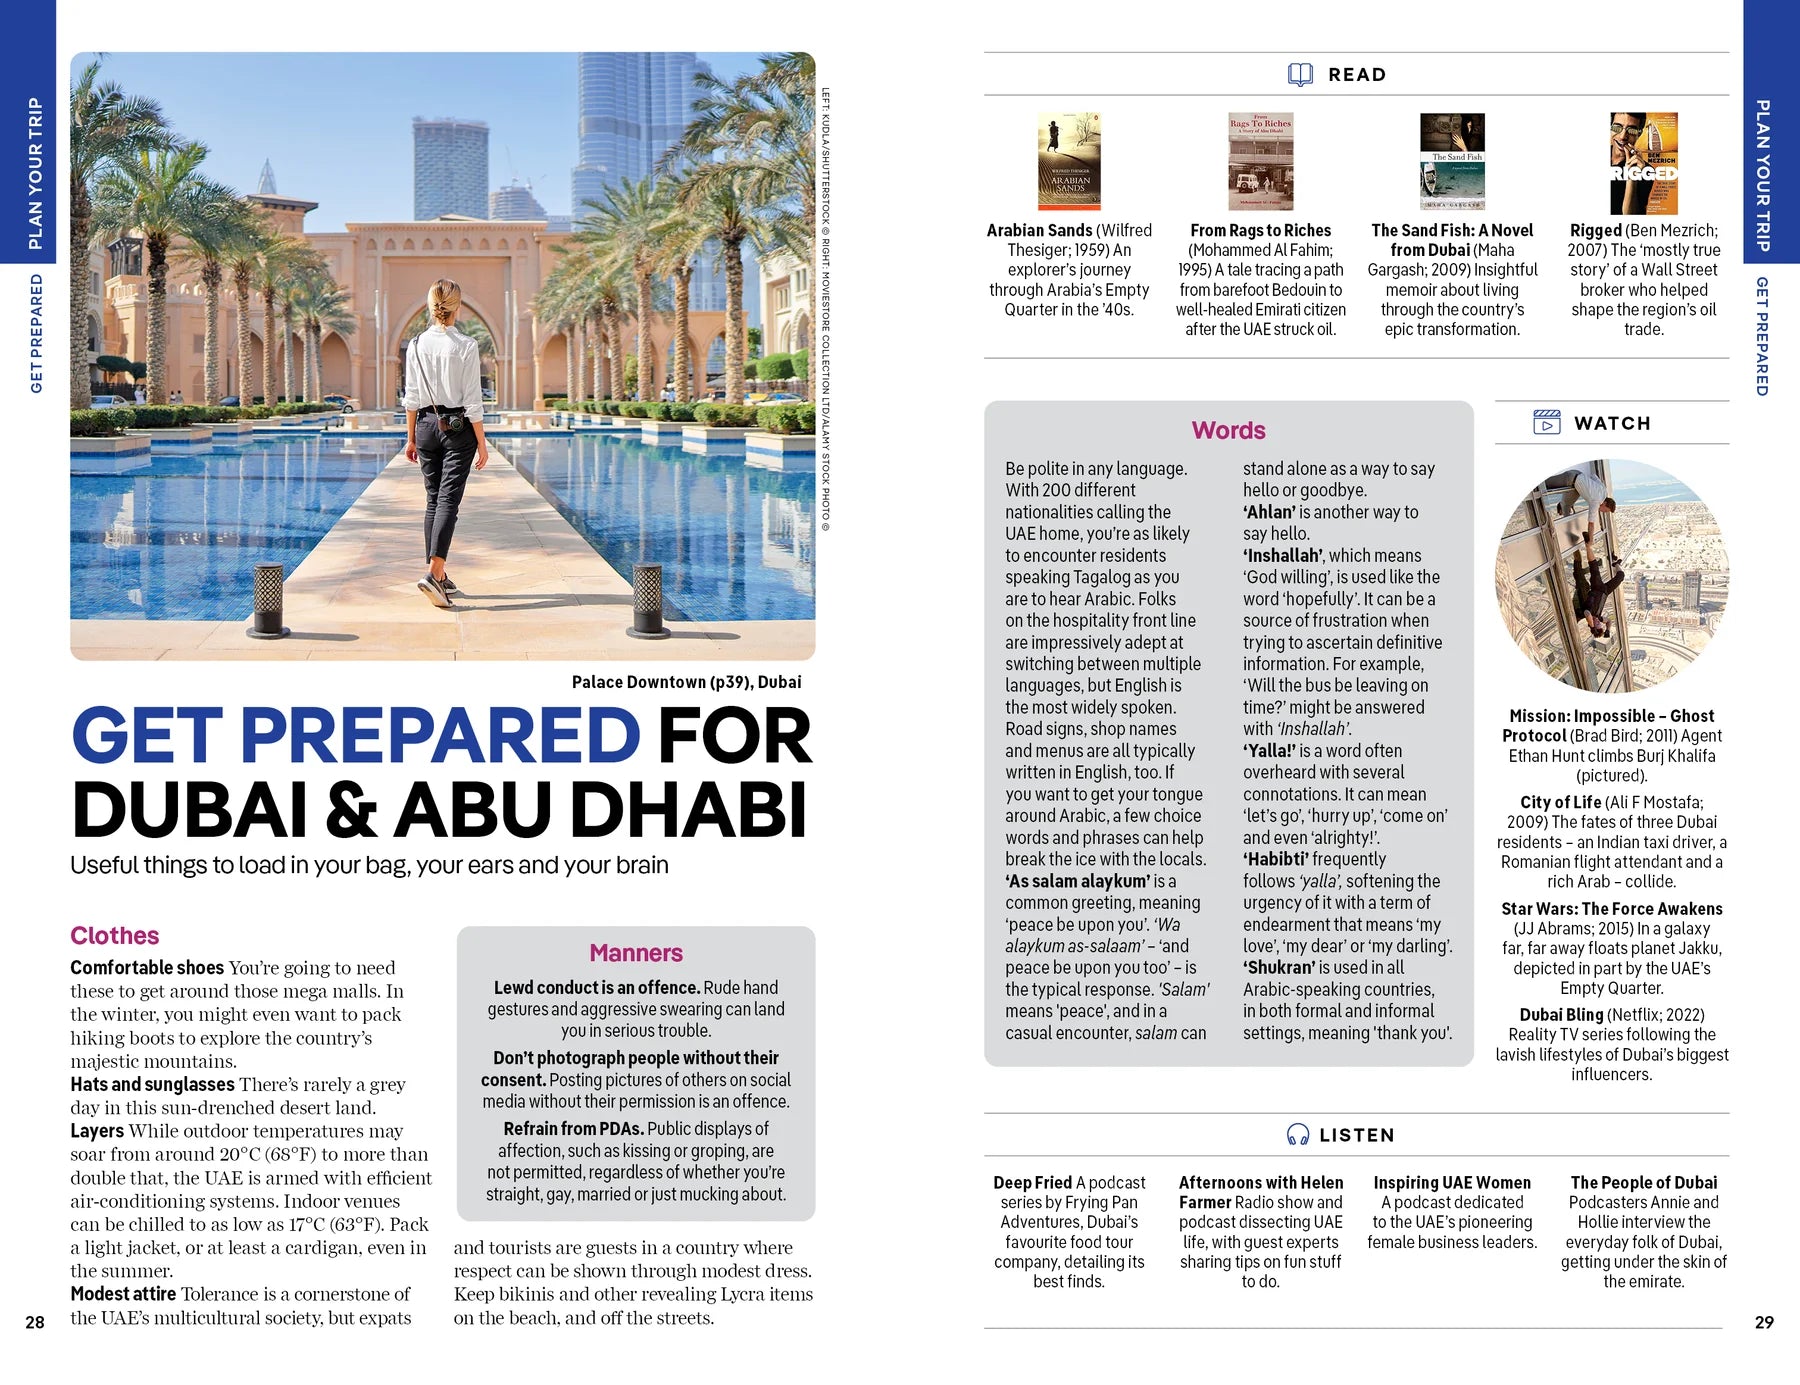 Dubai & Abu Dhabi - Lonely Planet